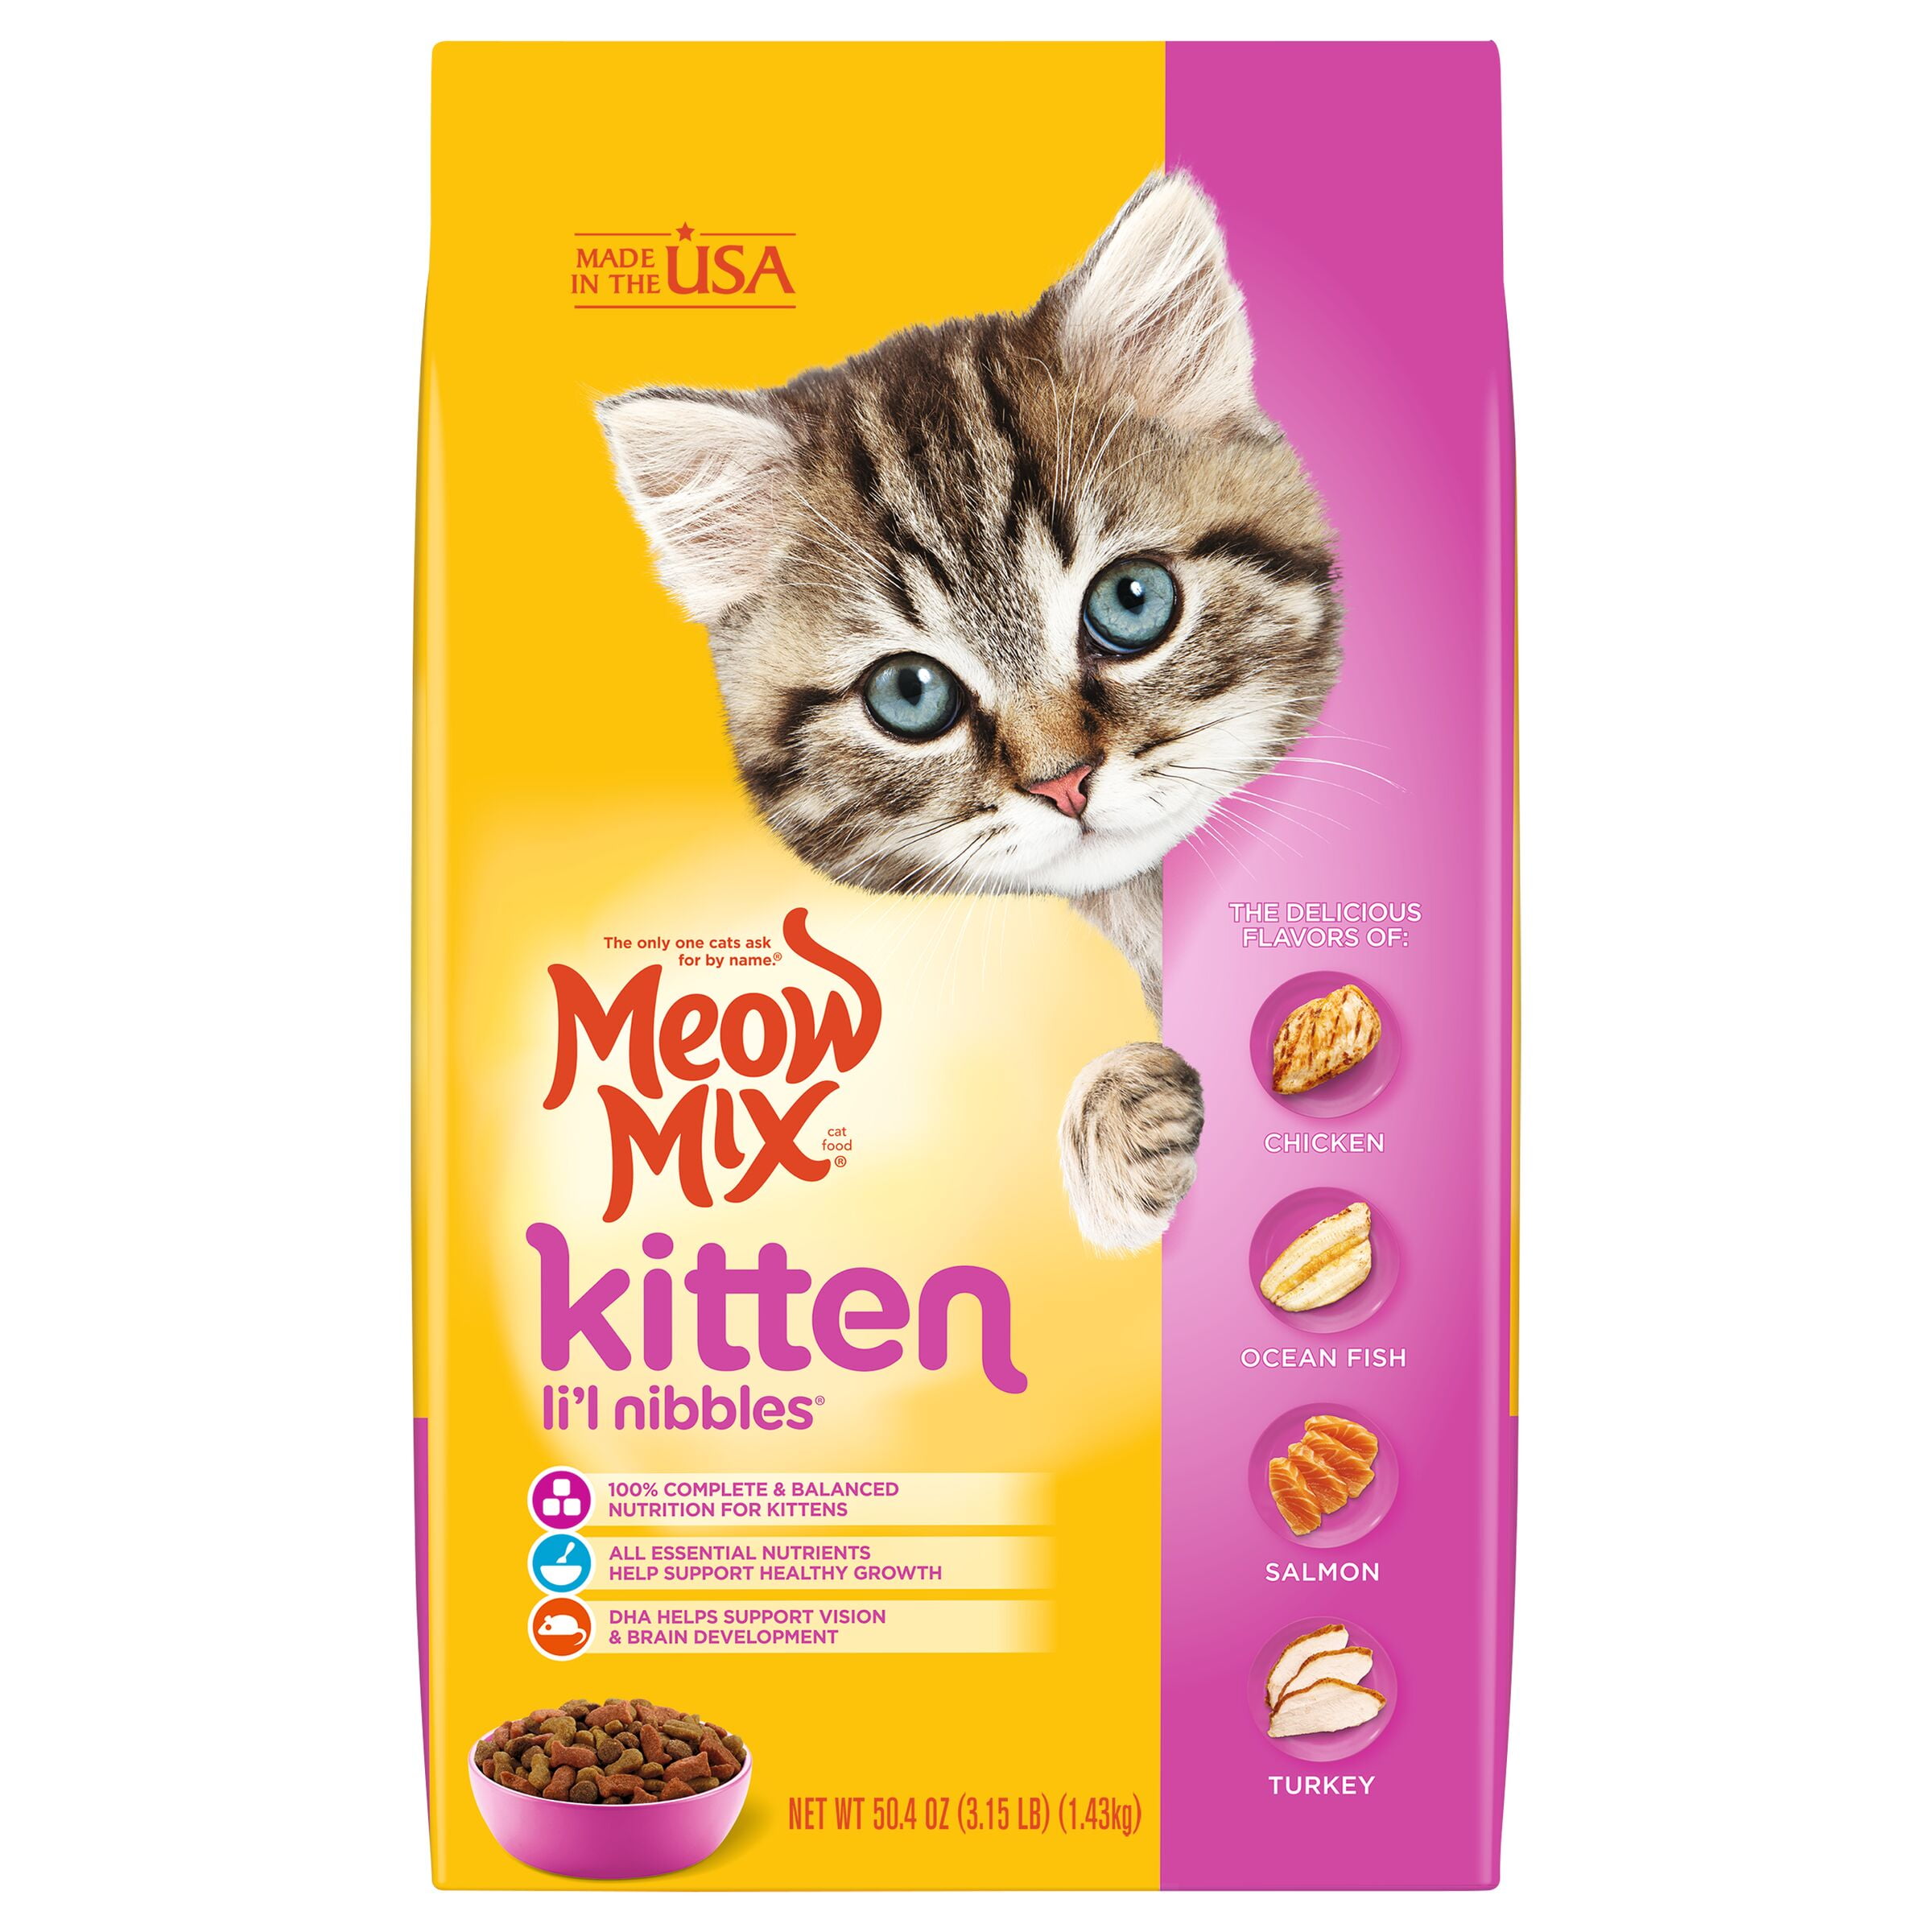 Meow Mix Kitten Li'l Nibbles Dry Cat Food, 3.15-Pound Bag